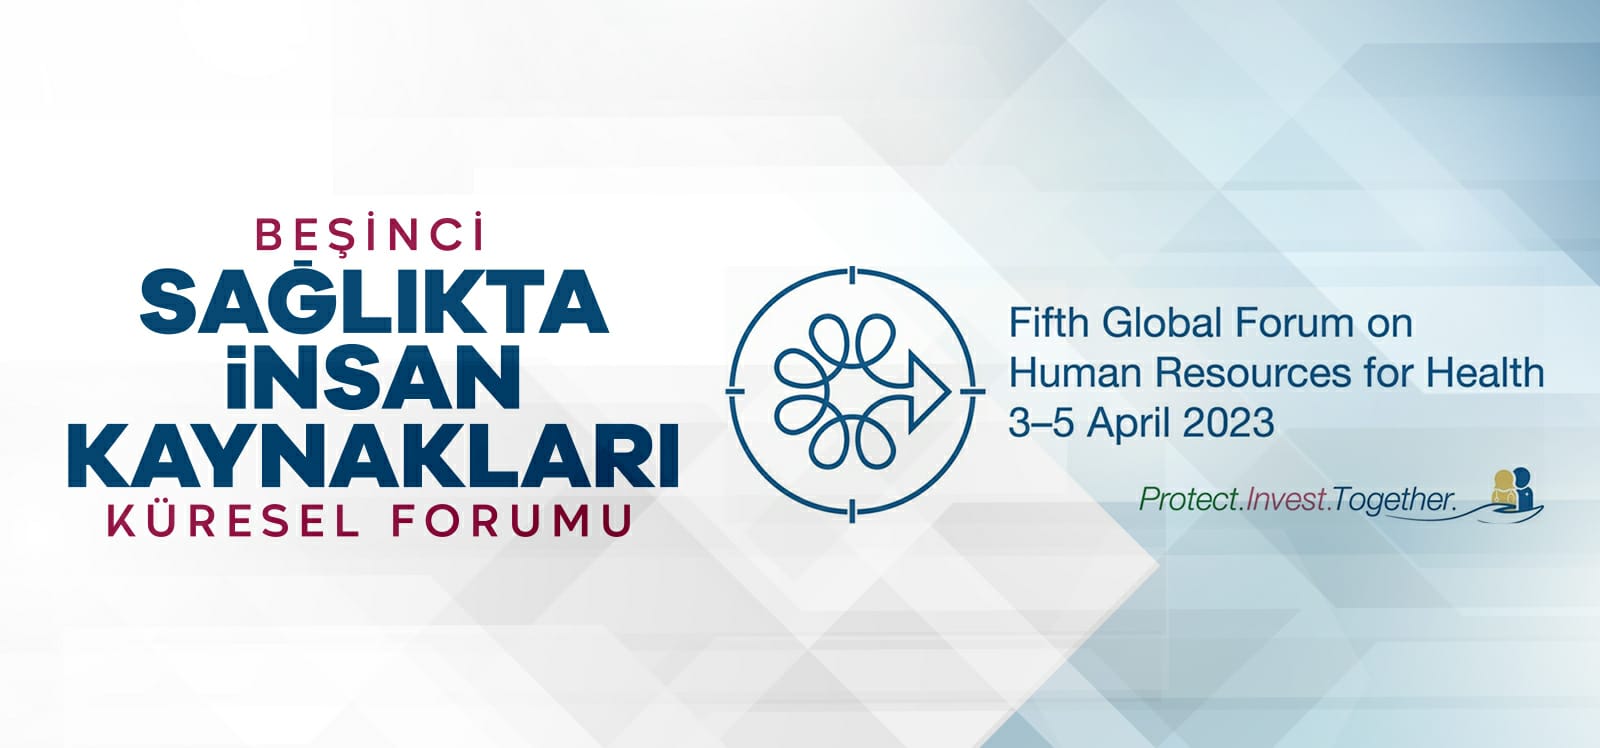 Beşinci Sağlıkta İnsan Kaynakları Küresel Forumu